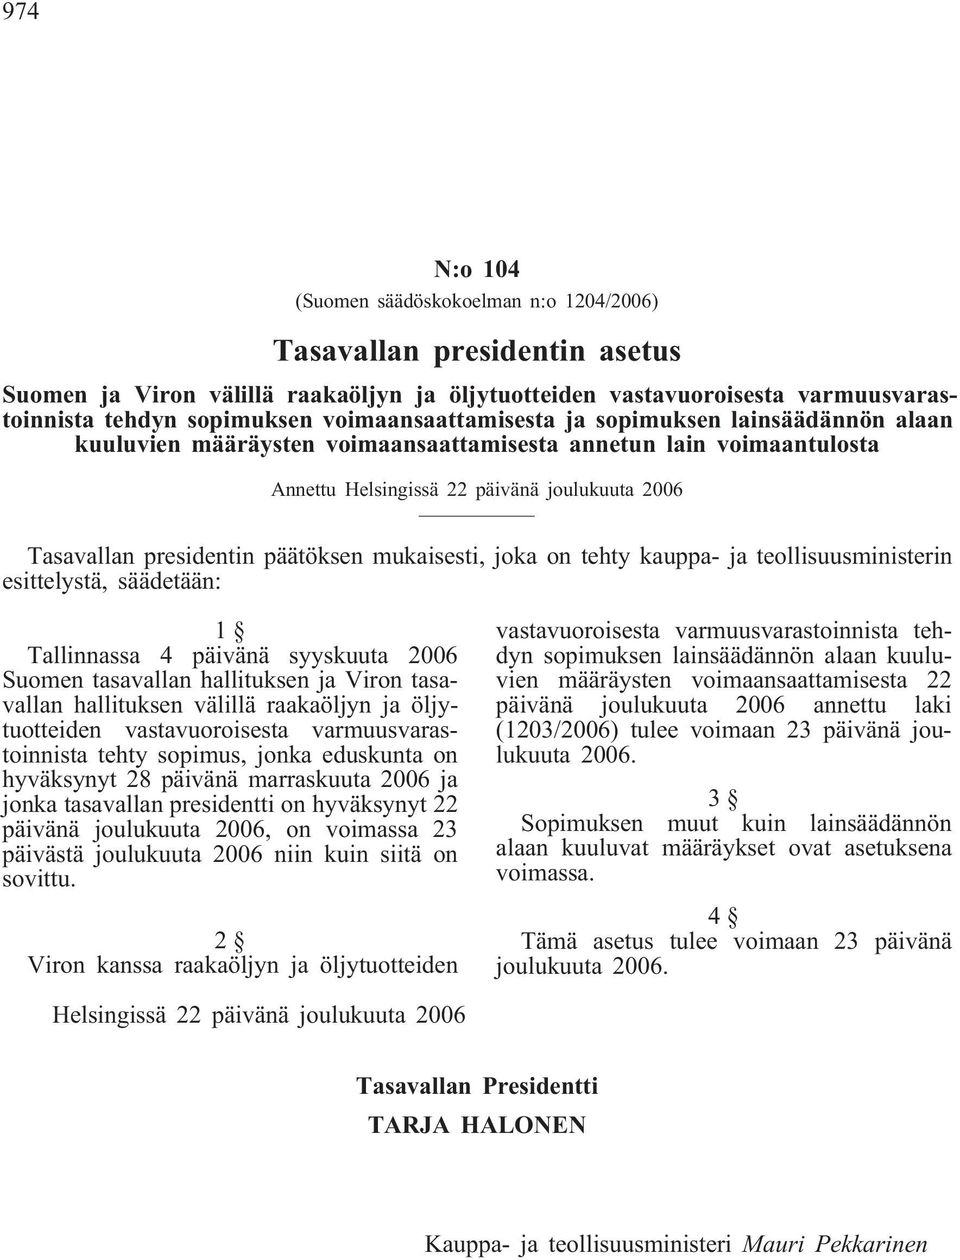 päätöksen mukaisesti, joka on tehty kauppa- ja teollisuusministerin esittelystä, säädetään: 1 Tallinnassa 4 päivänä syyskuuta 2006 Suomen tasavallan hallituksen ja Viron tasavallan hallituksen